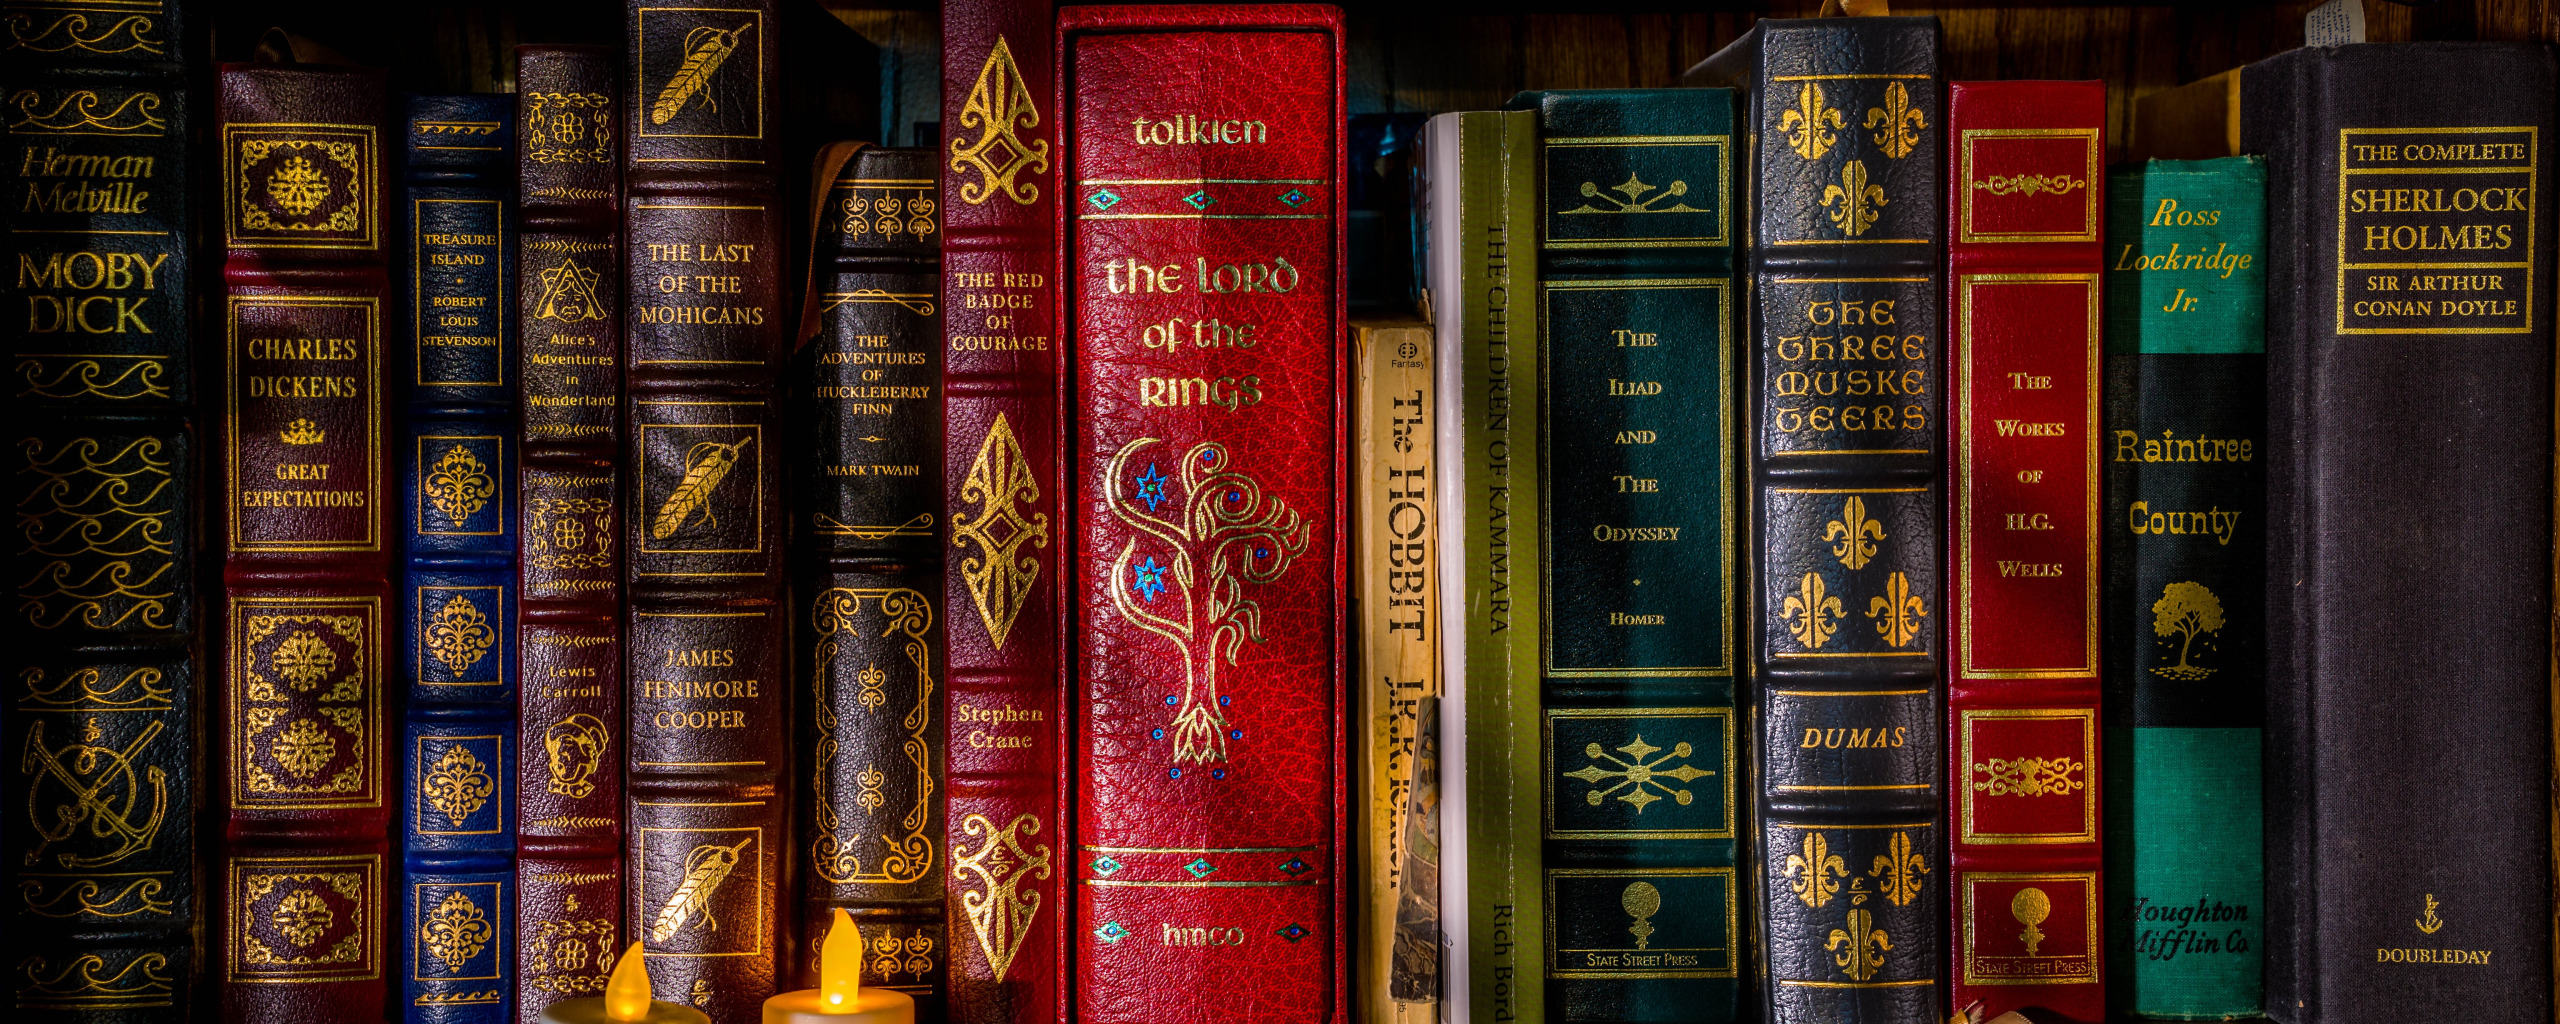 На книжной полке рядом стоят два тома пушкина первый и второй